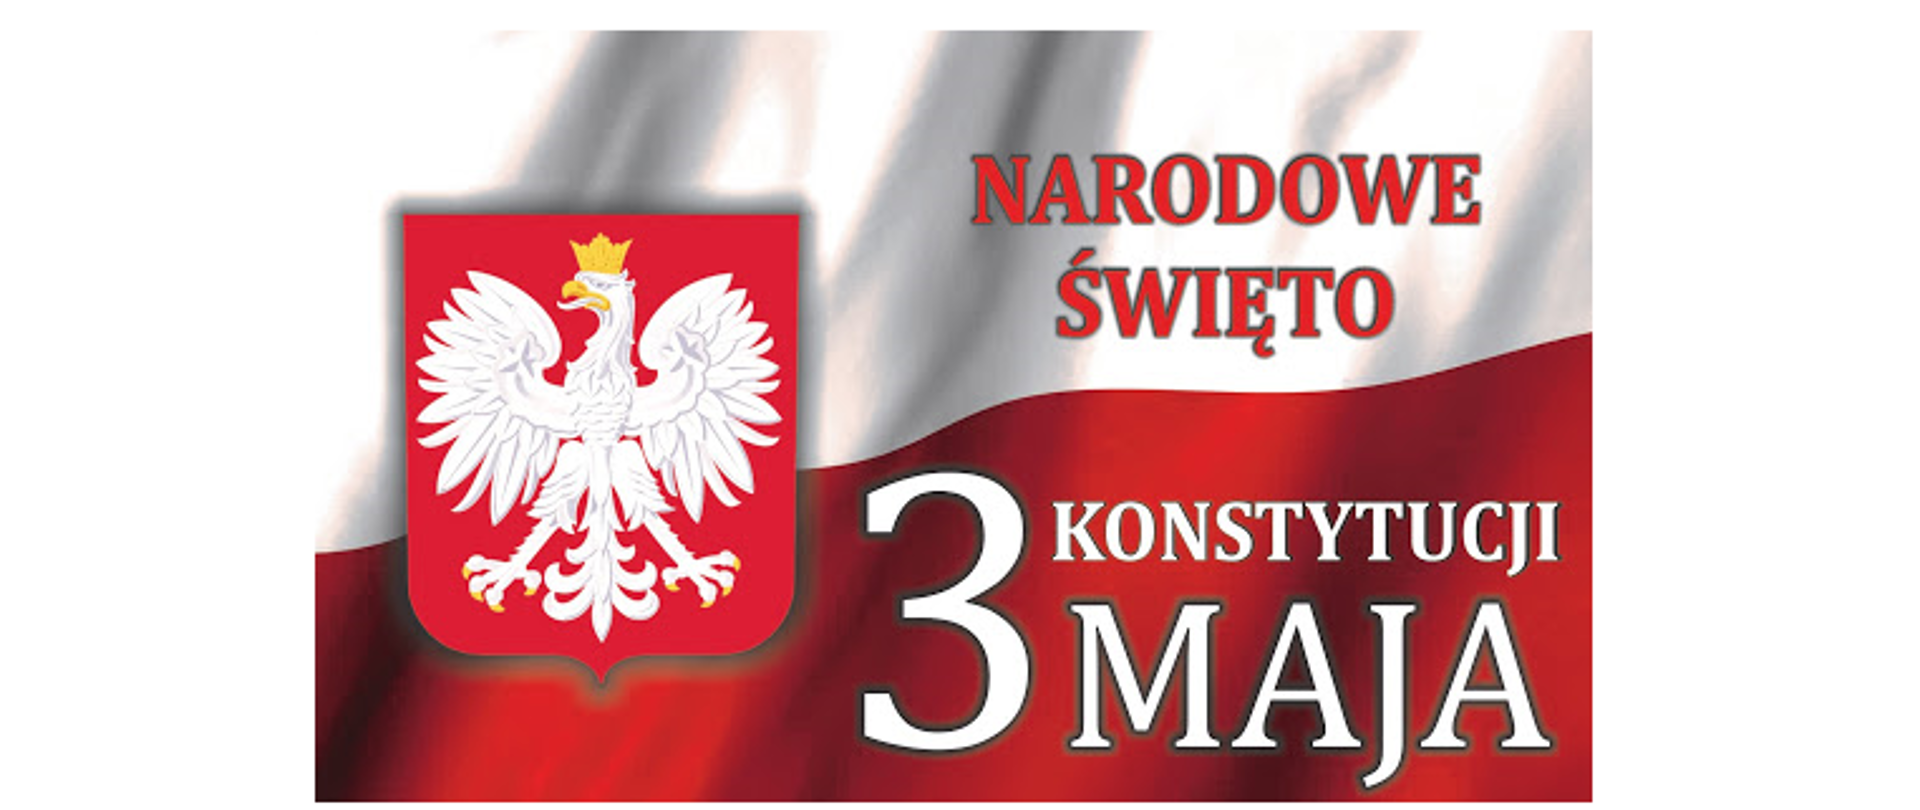 Flaga biało-czerwona na niej godło Polski oraz hasło: "NARODOWE ŚWIĘTO KONSTYTUCJI 3 MAJA